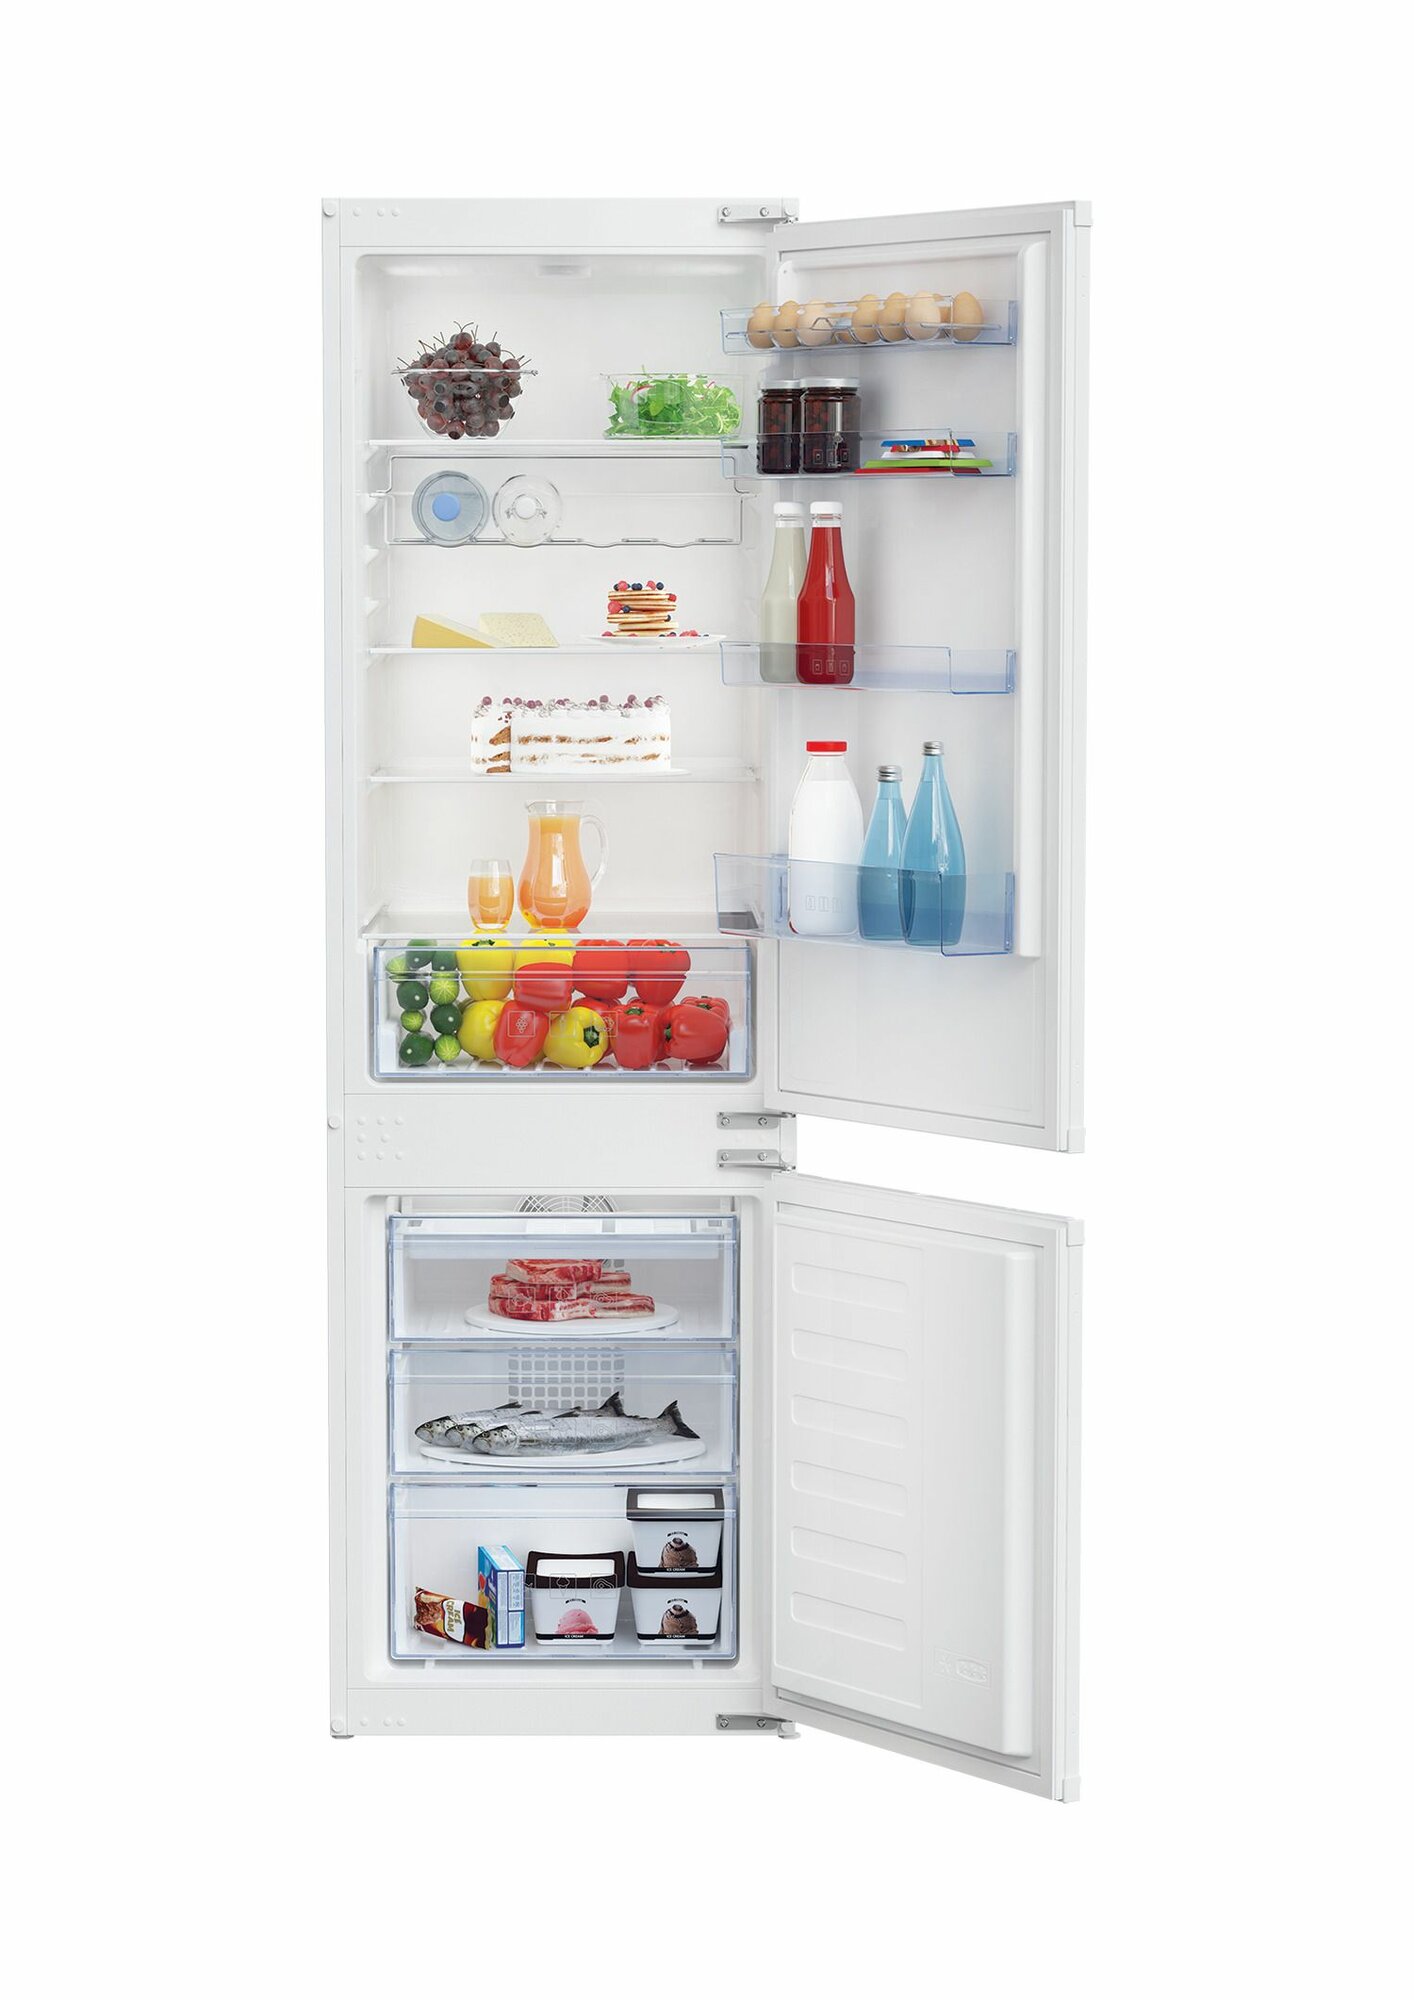 Встраиваемый двухкамерный холодильник Beko BCHA2752S No frost, белый